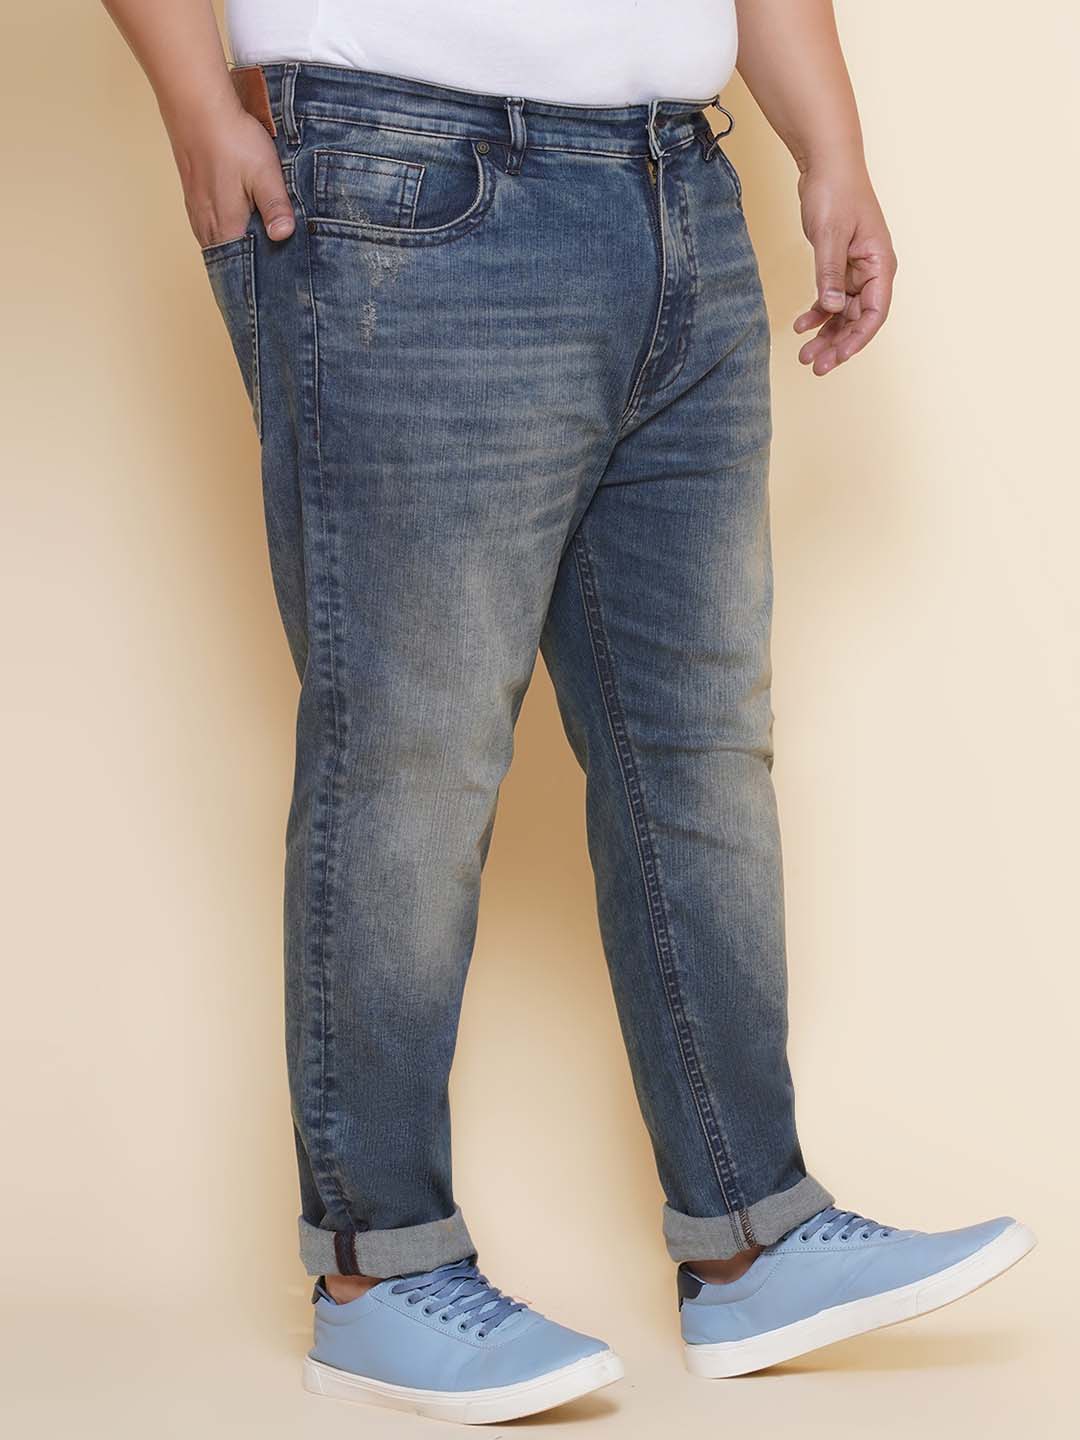 bottomwear/jeans/PJPJ60114/pjpj60114-3.jpg